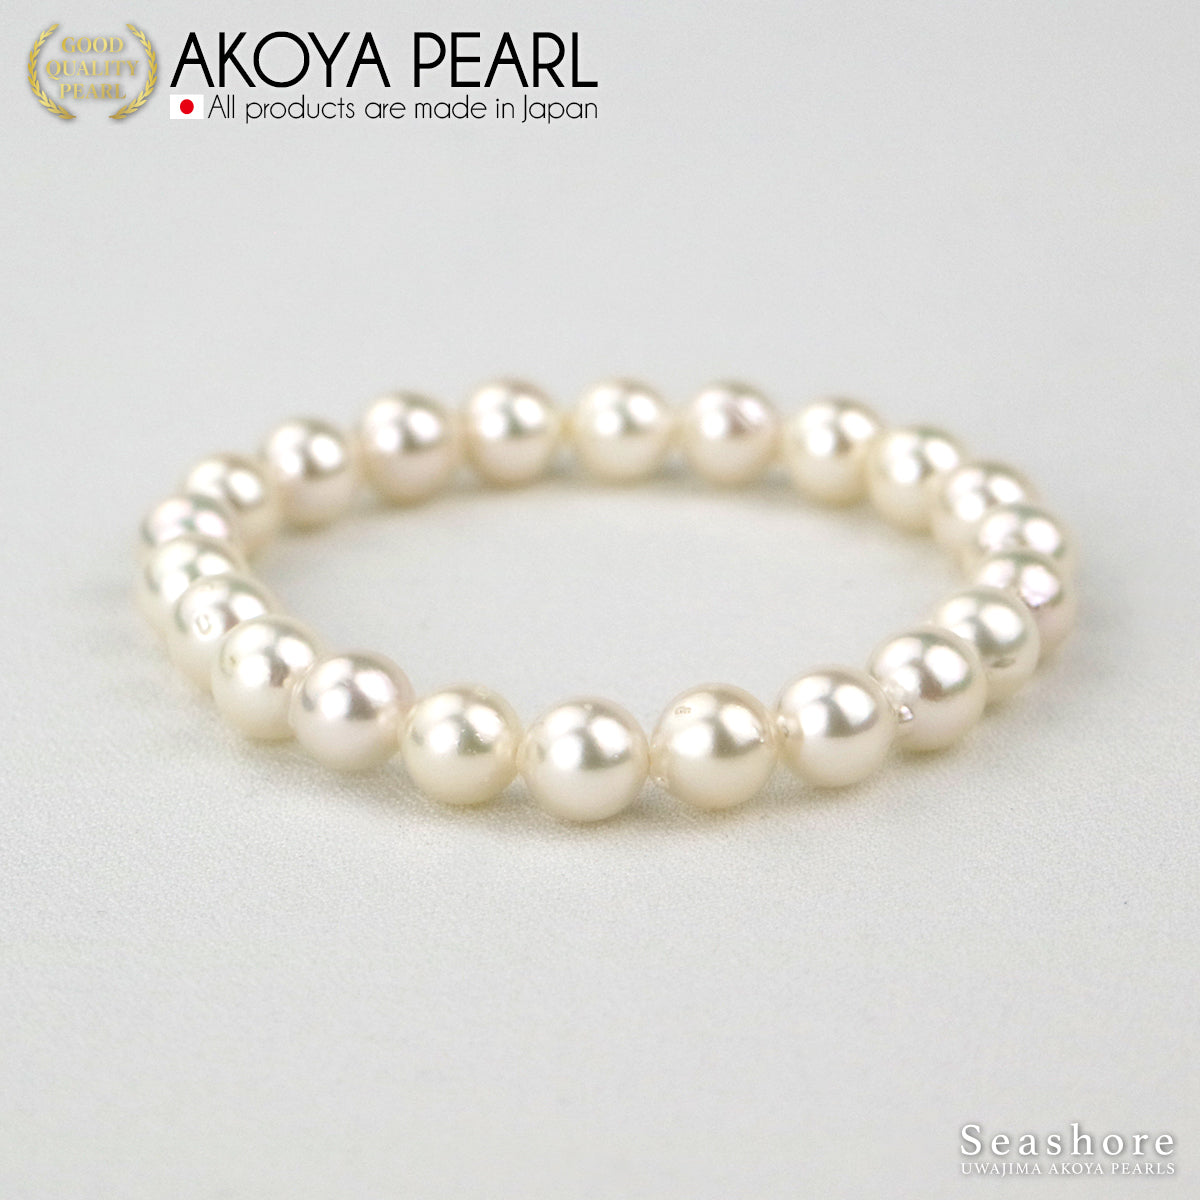 巴洛克珍珠手链白色 [8.0-9.0 毫米] 透明强化橡胶半巴洛克储物灰色表壳 Akoya 珍珠